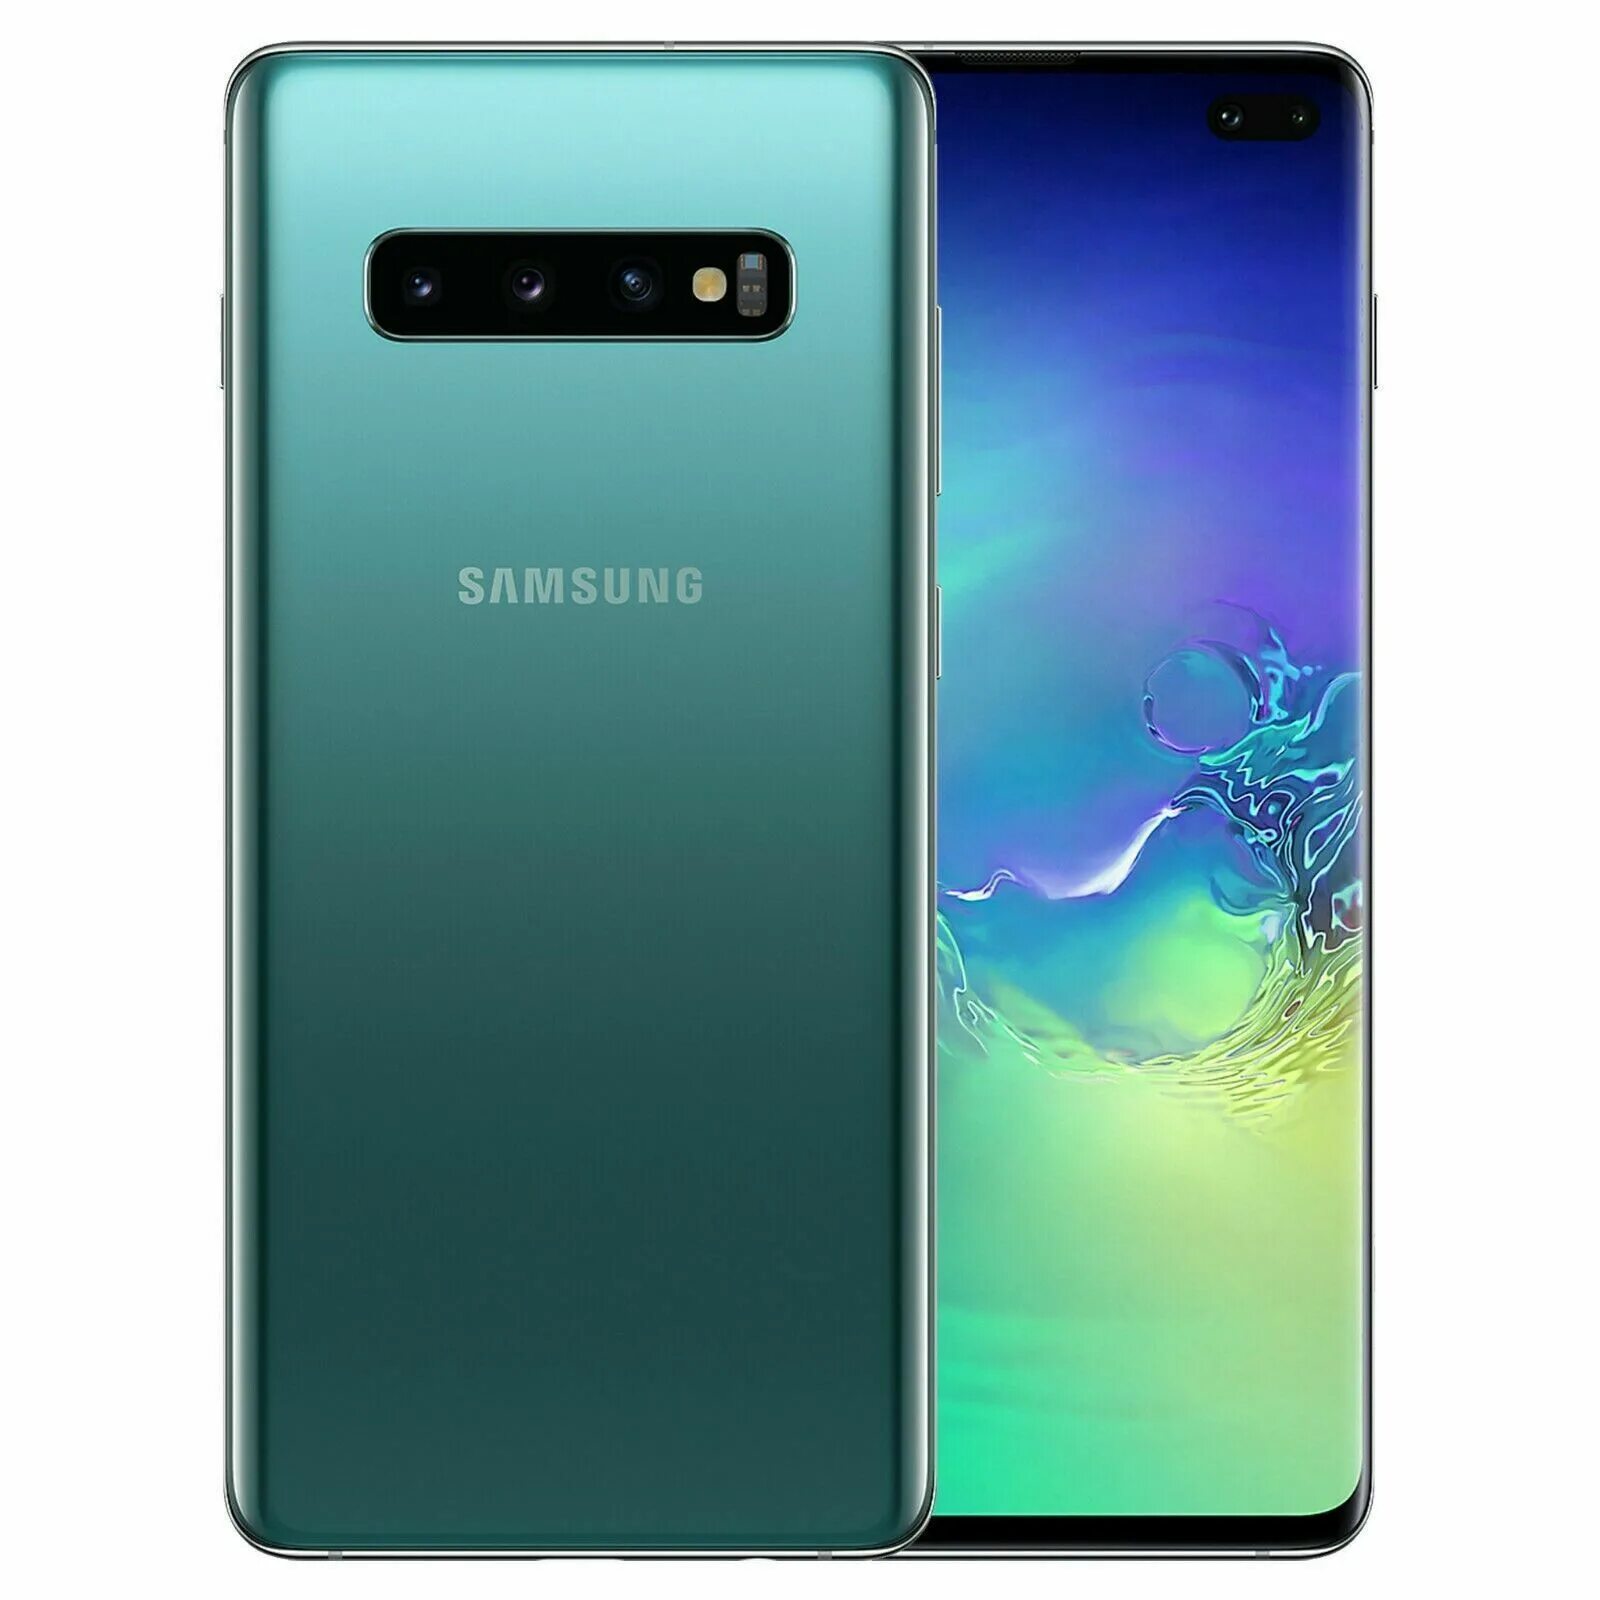 Samsung Galaxy s 10 g973 FD. Samsung g973f Galaxy s10 128gb. Samsung Galaxy s10+ 8/128gb. Samsung Galaxy s10 Plus g975f 128gb. Galaxy s10 8